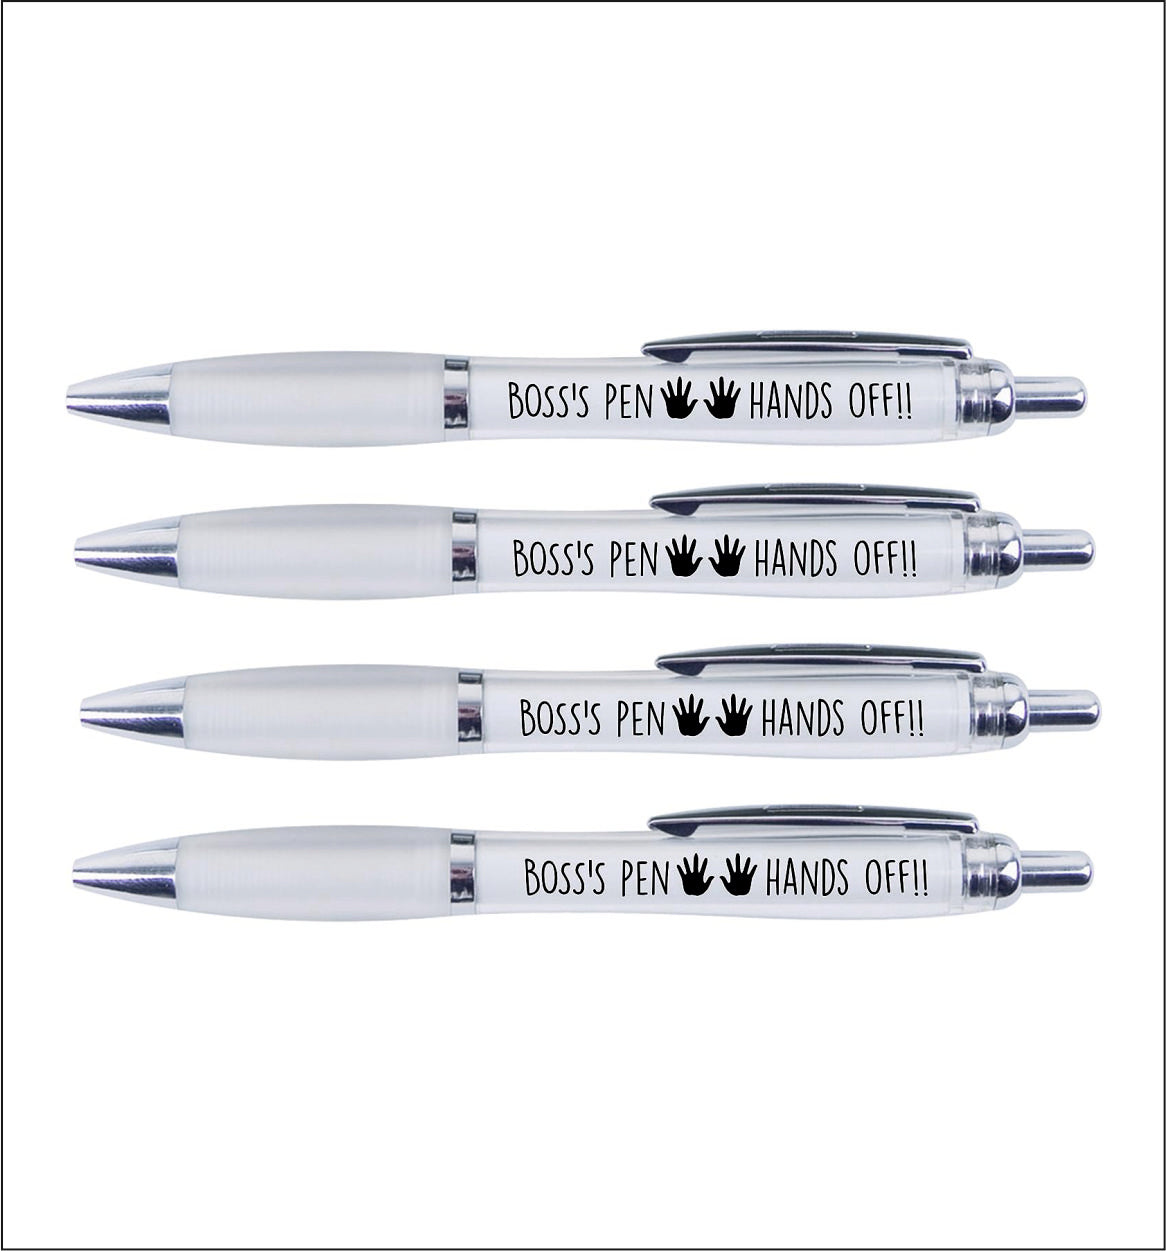 4 x Boss's Pens "HANDS OFF"